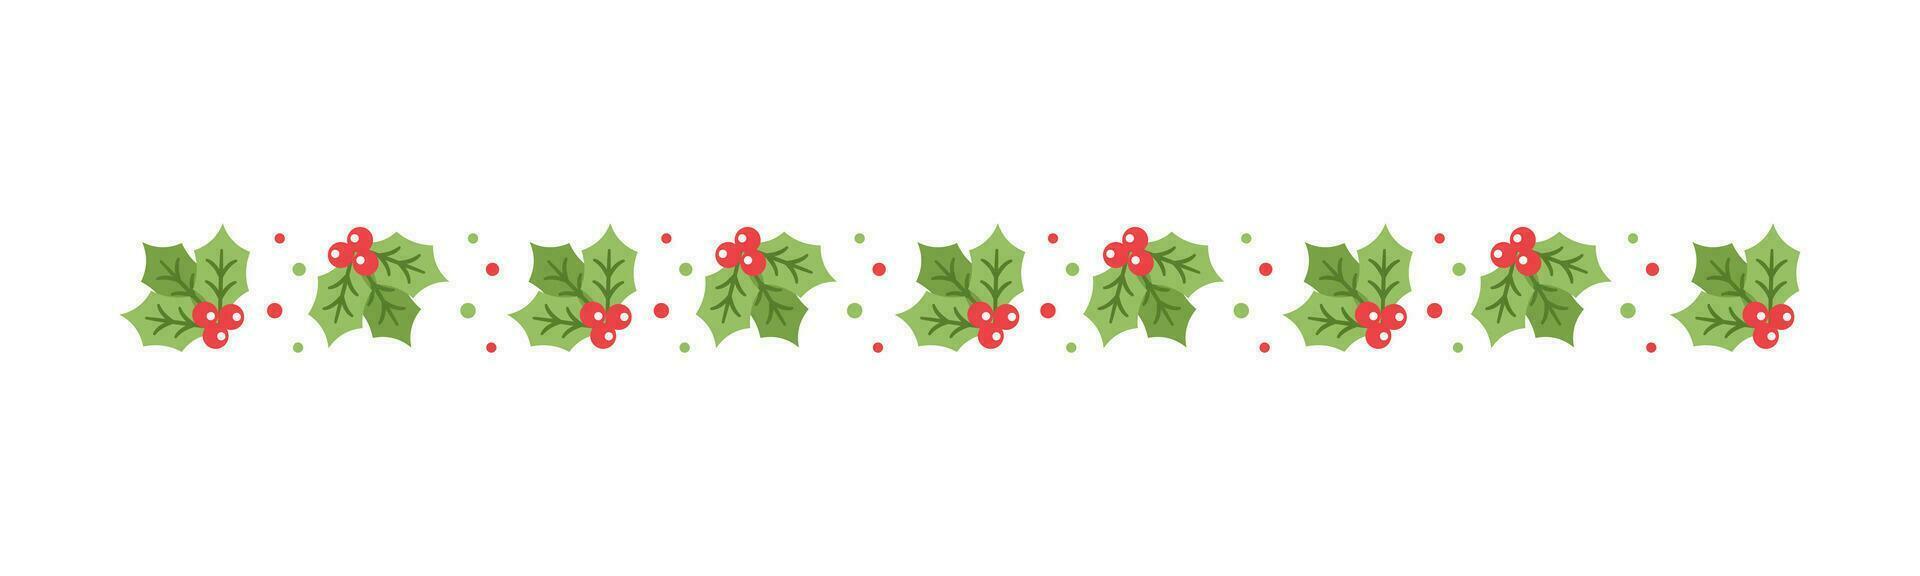 Navidad temática decorativo frontera y texto divisor, muérdago y caramelo caña modelo. vector ilustración.